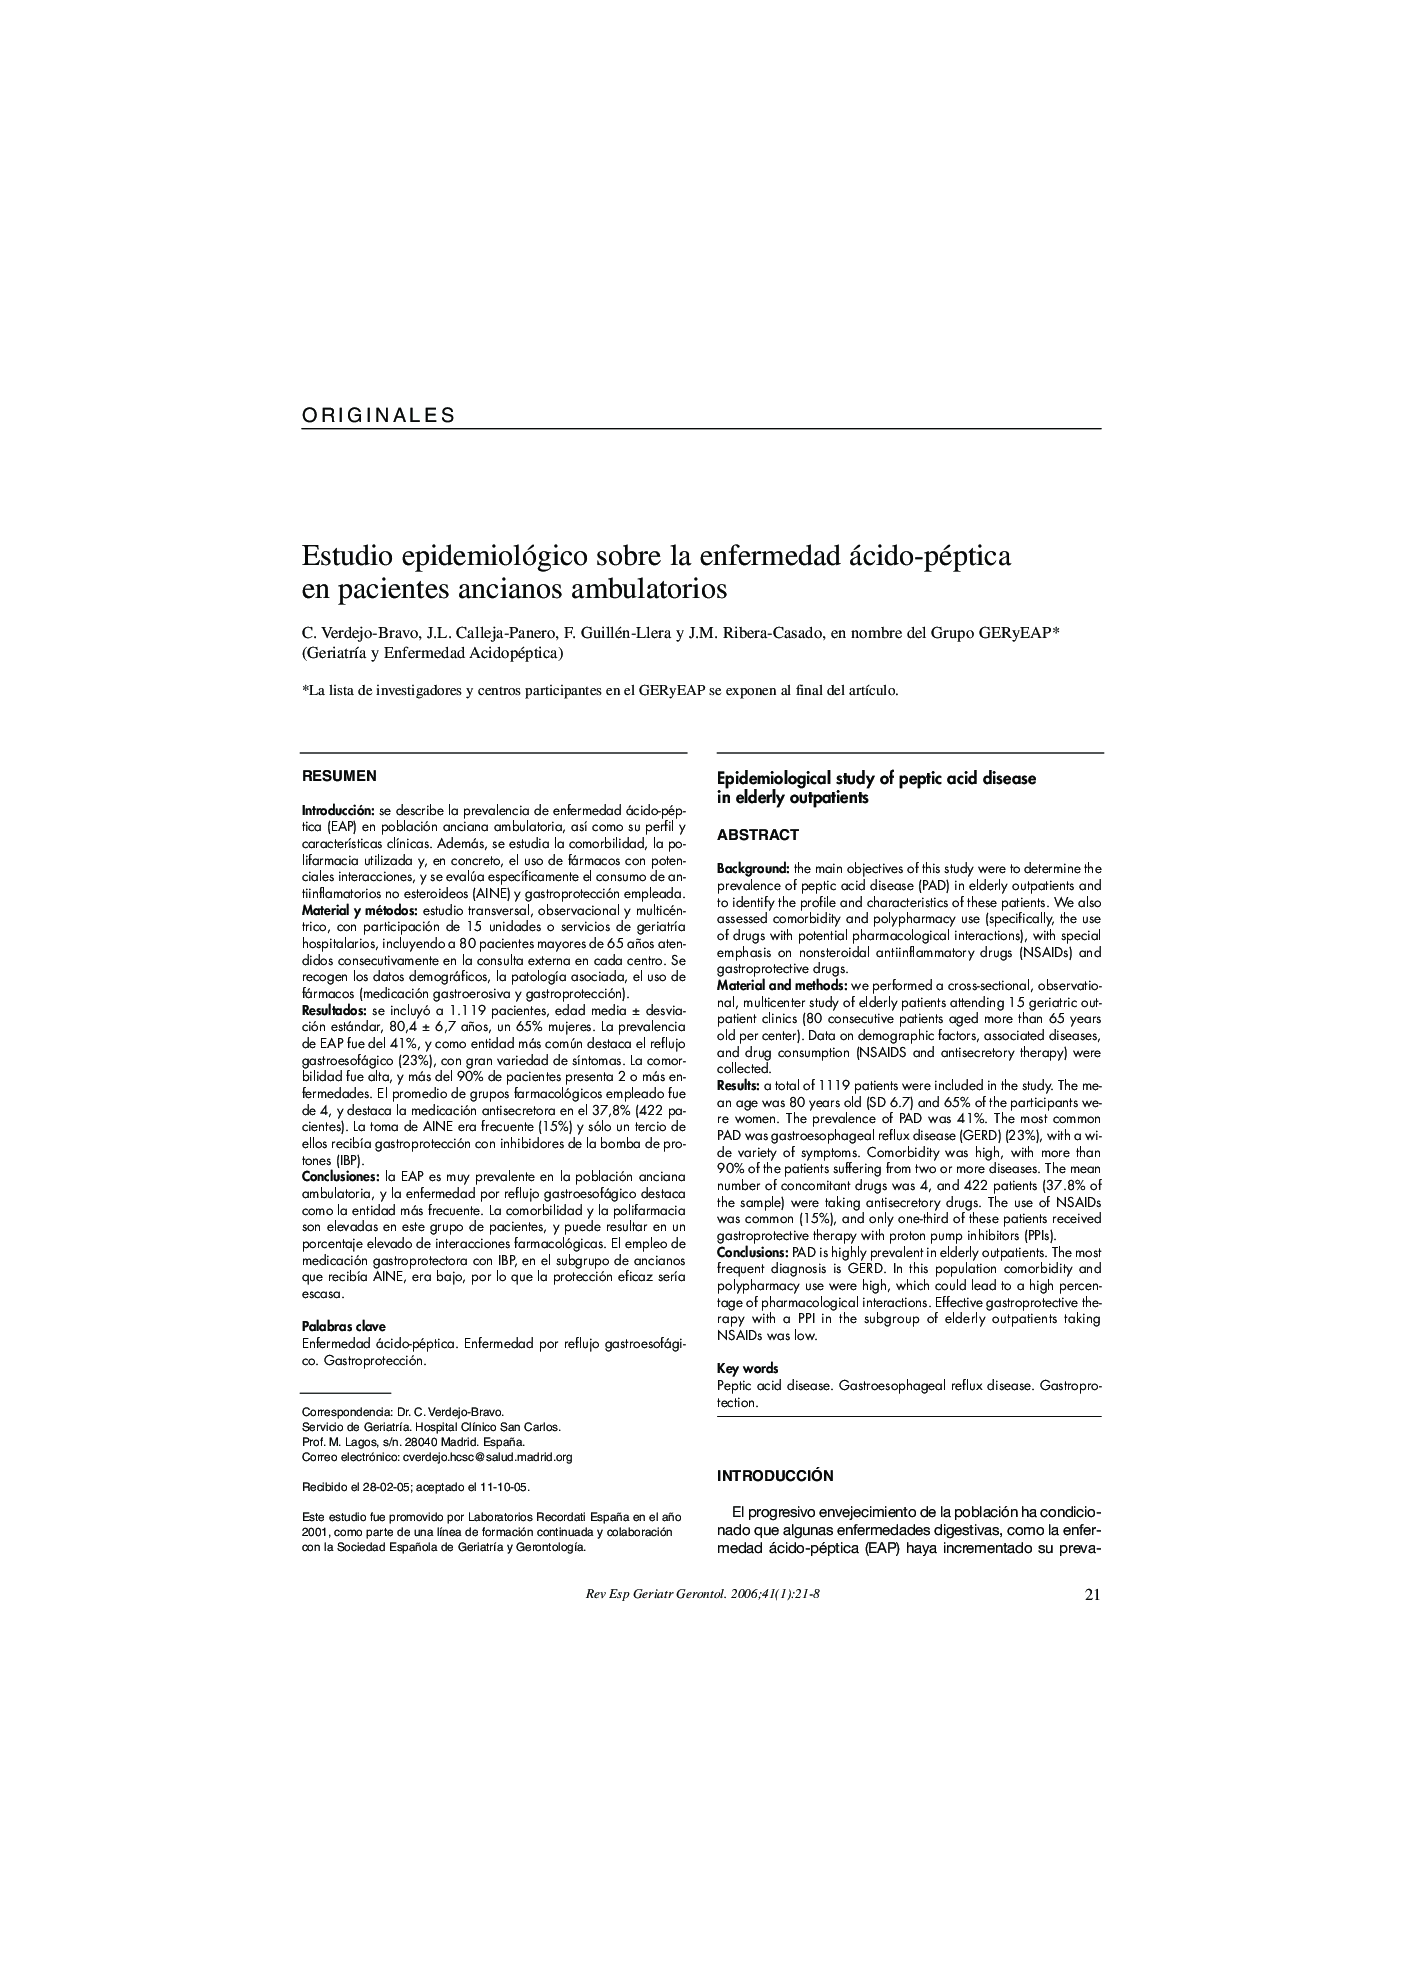 Estudio epidemiológico sobre la enfermedad ácido-péptica en pacientes ancianos ambulatorios